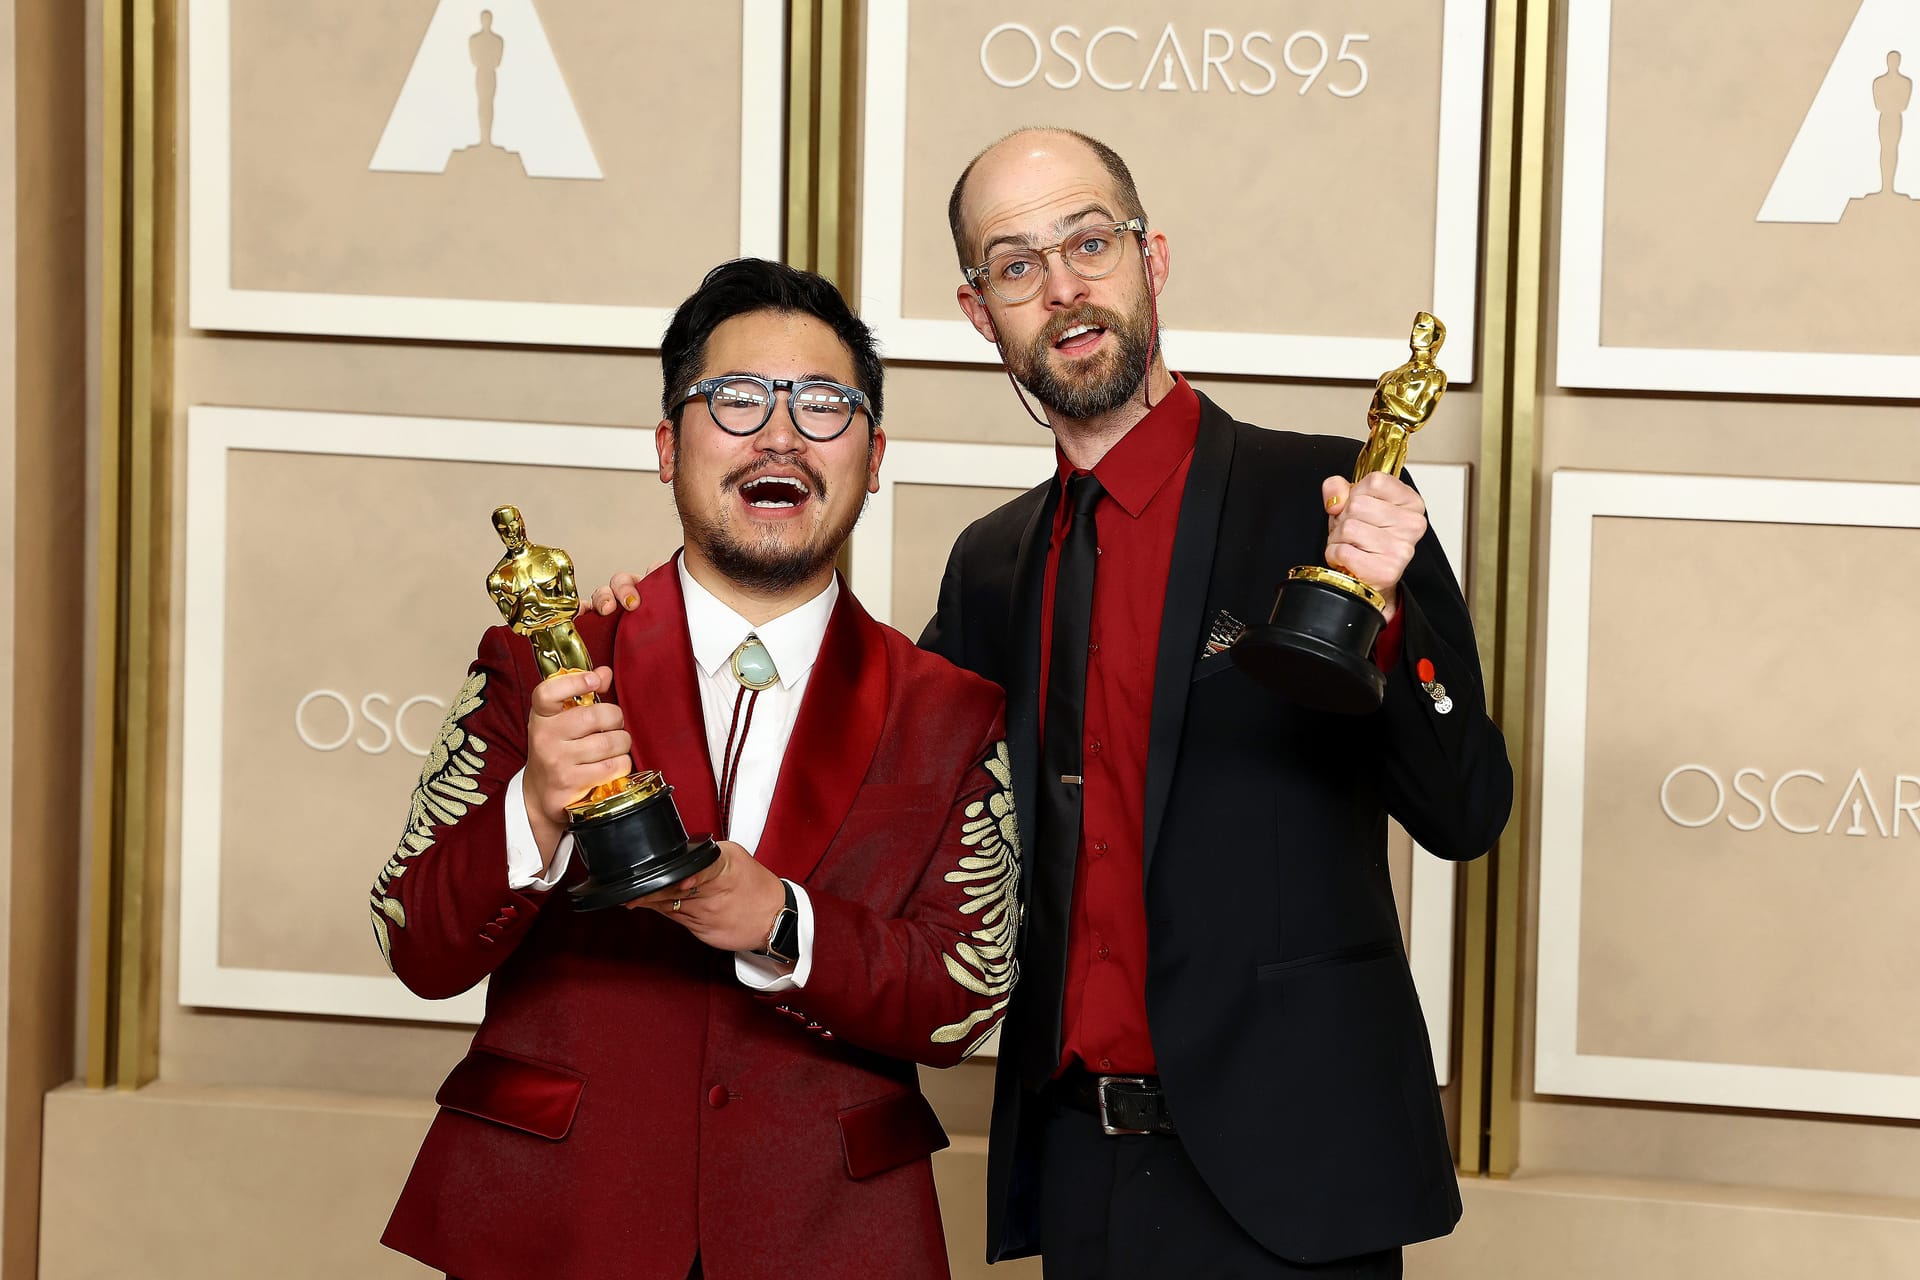 Dan Kwan und Daniel Scheinert erhielten für "Everything Everywhere All at Once" den Oscar für die "beste Regie".